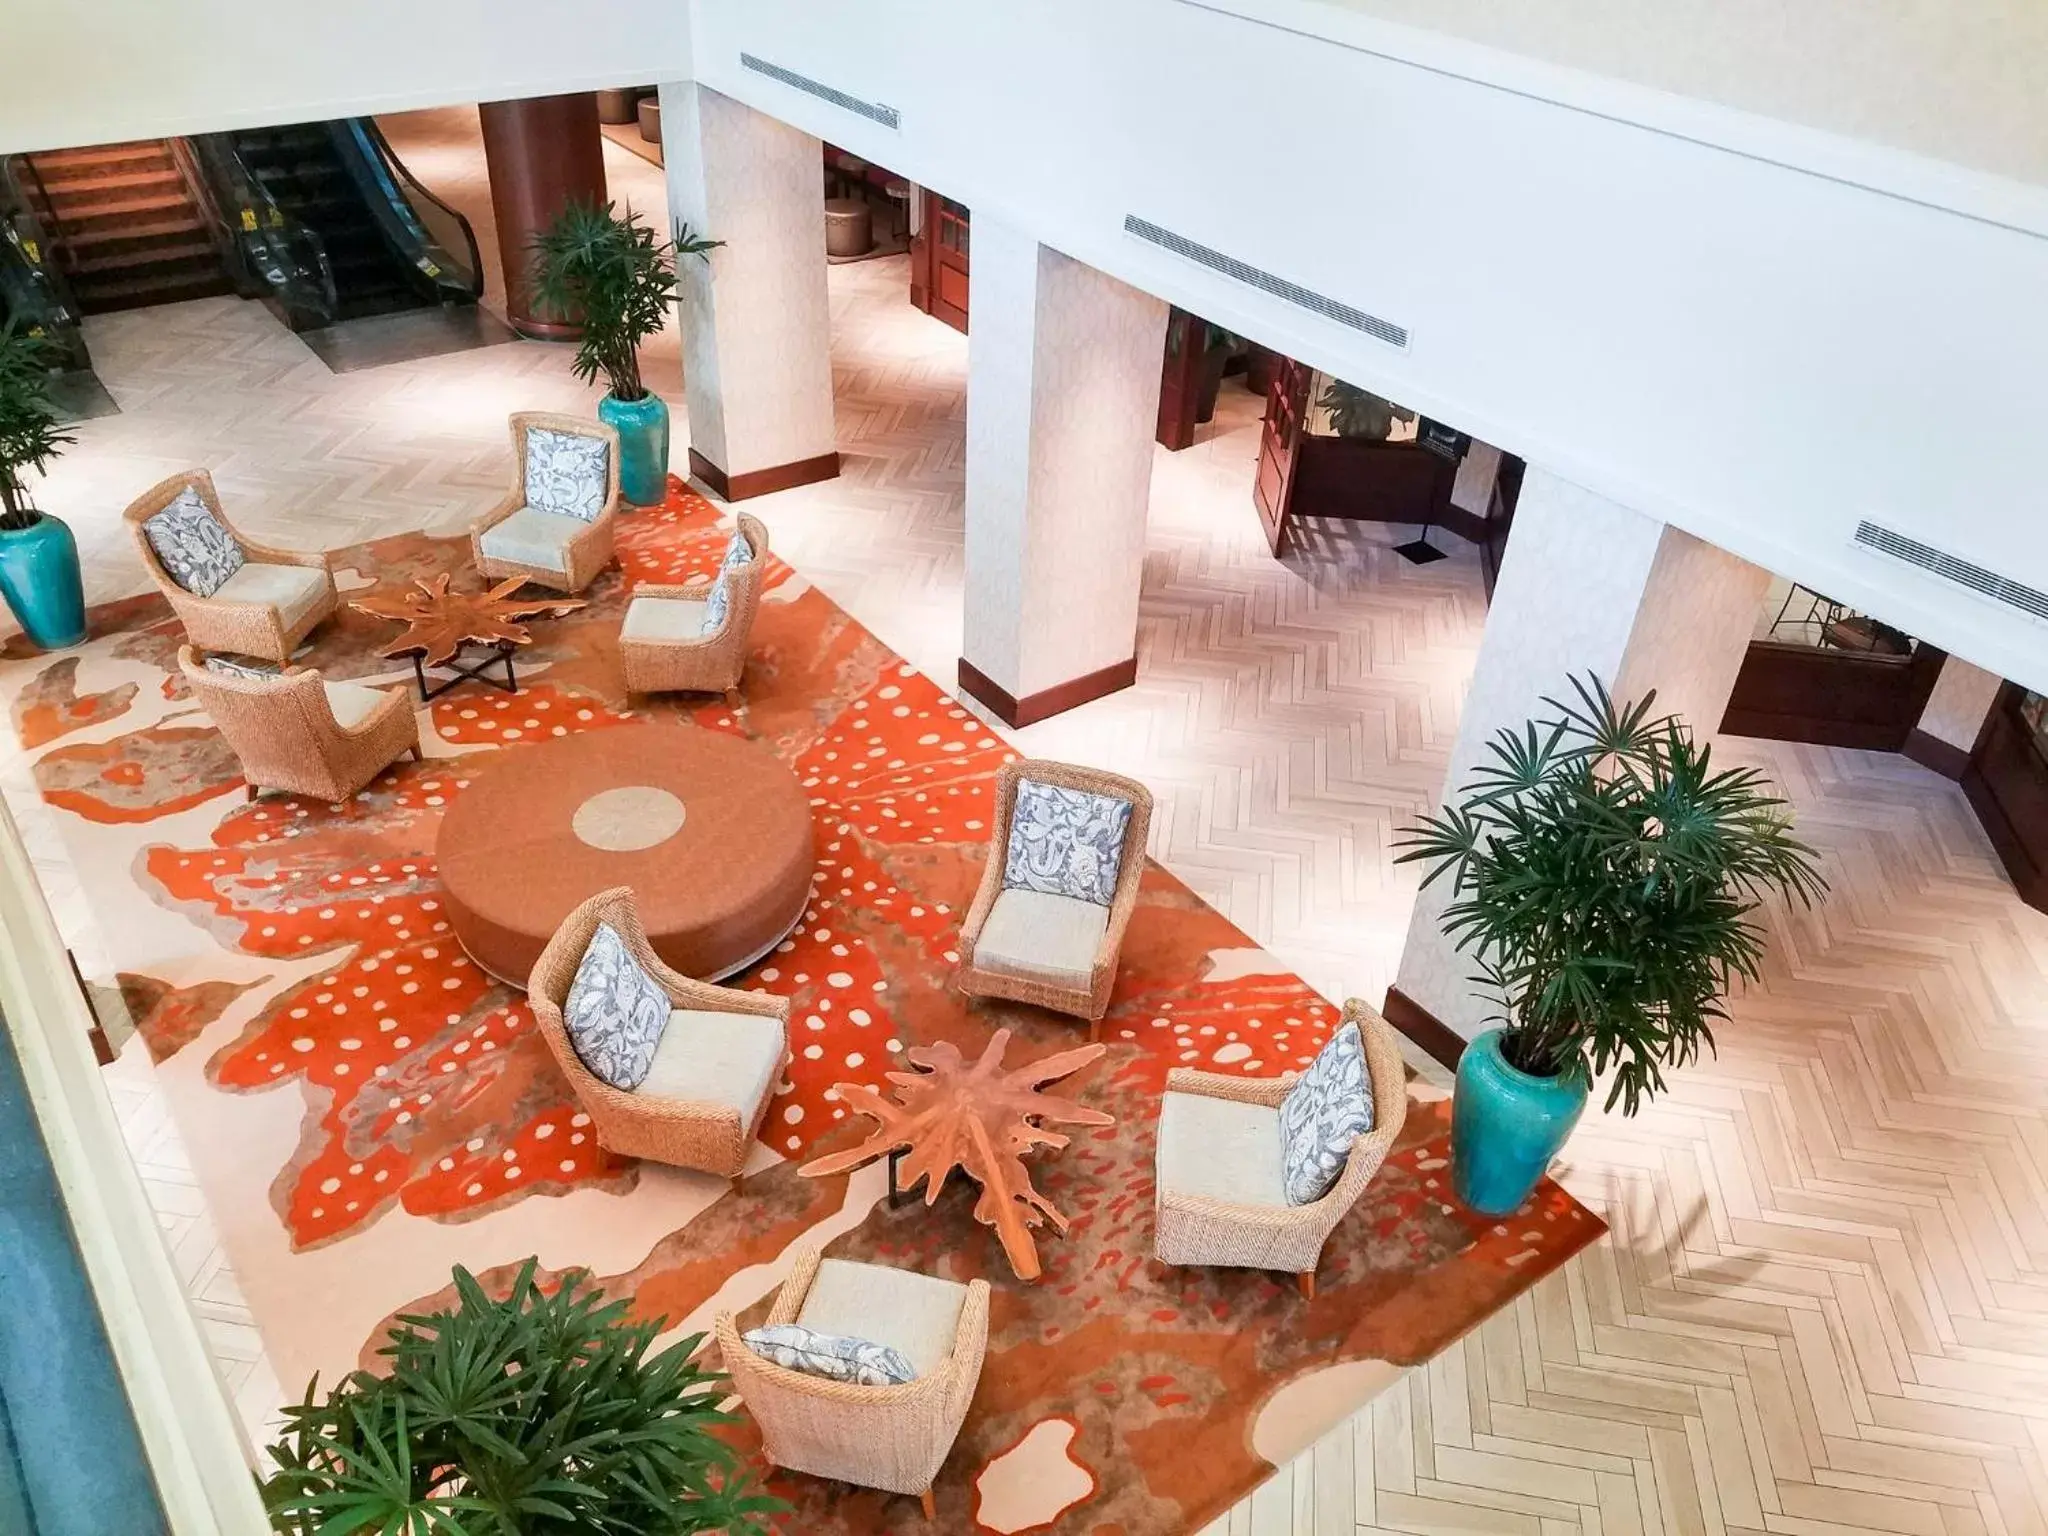 Lobby or reception in Omni Corpus Christi Hotel